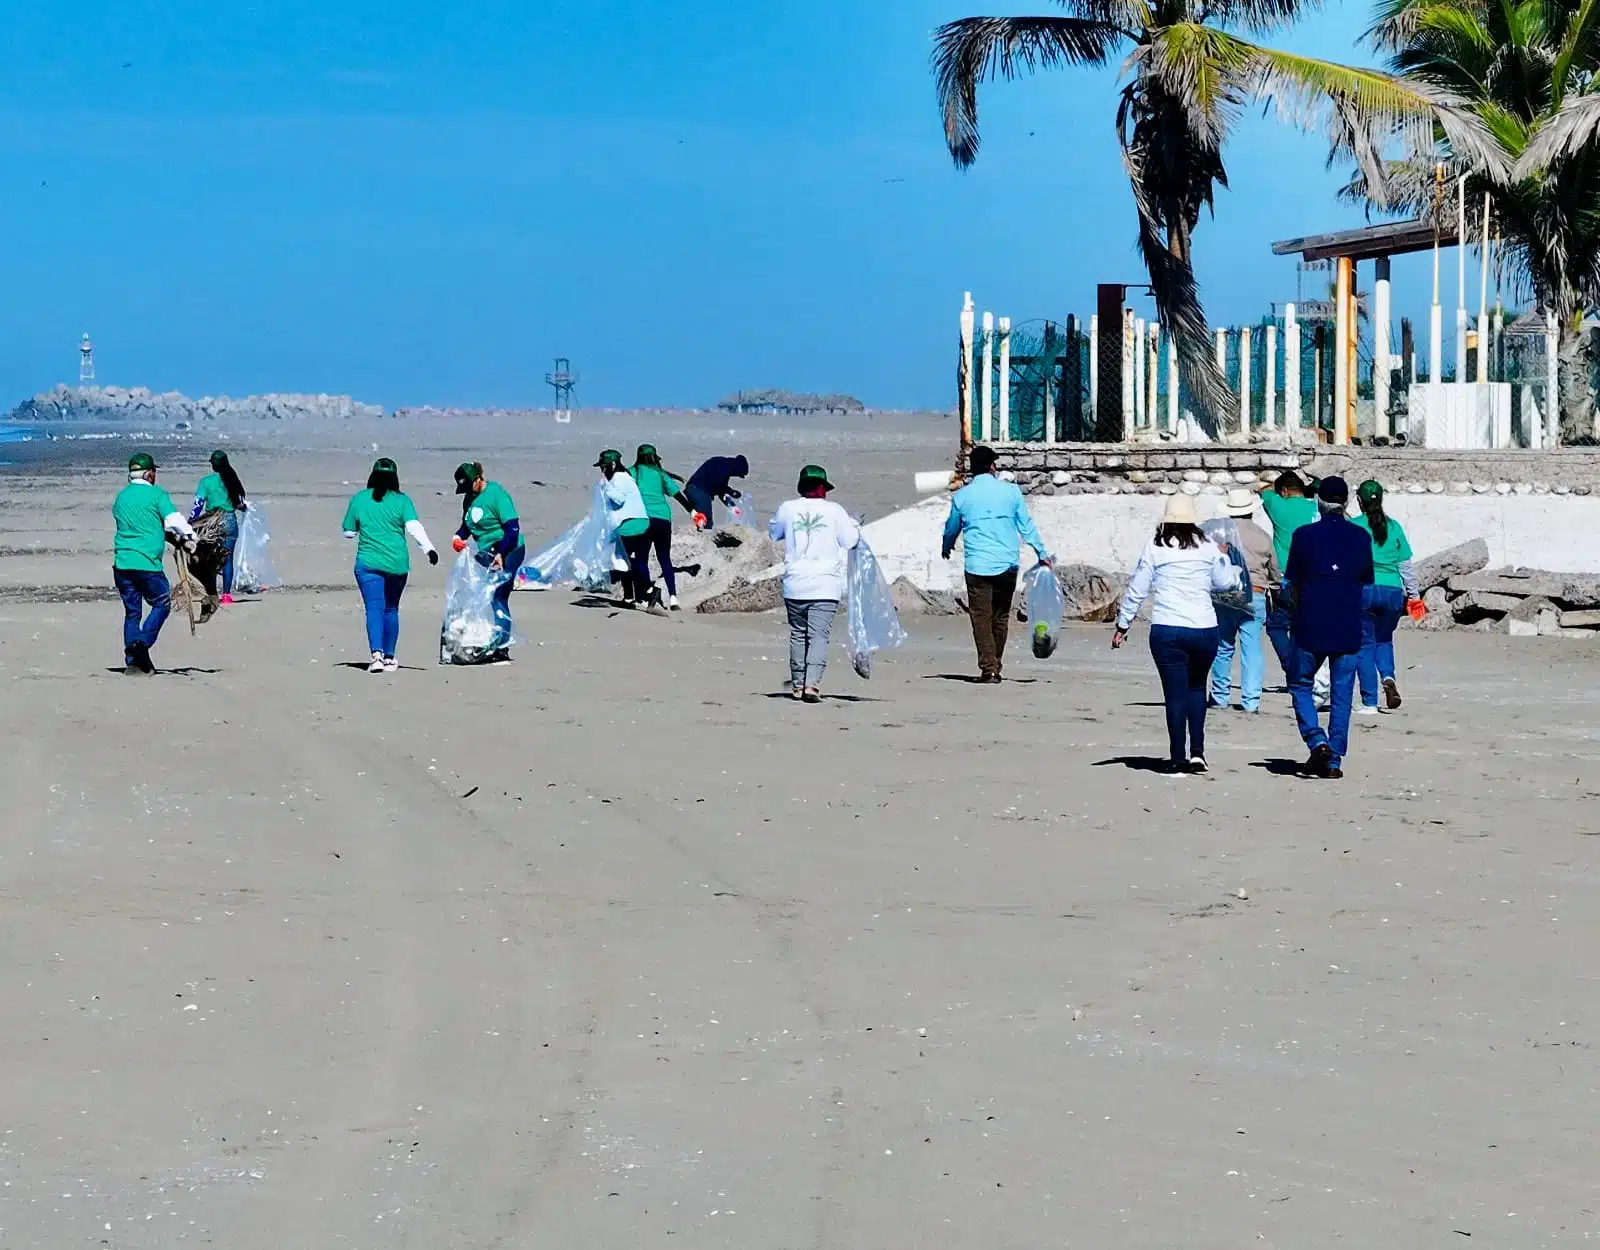 Campaña de limpieza en playa Las Glorias, Guasave.